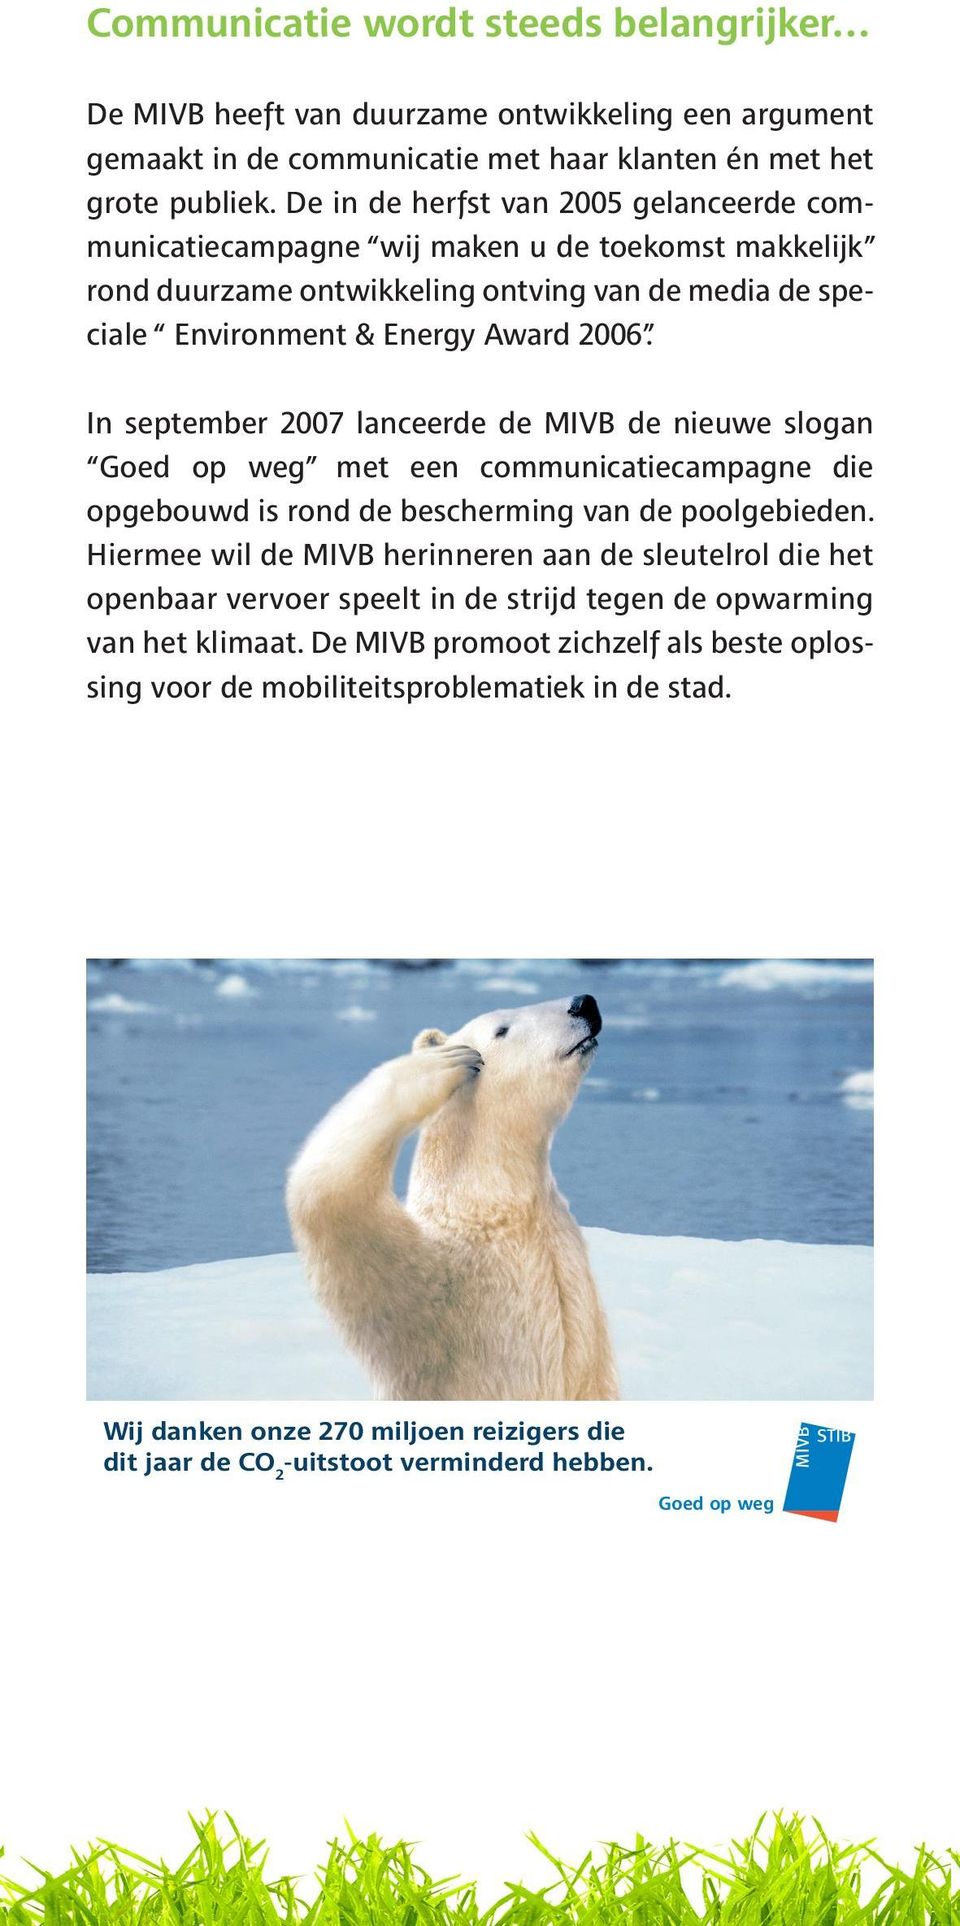 2006. In september 2007 lanceerde de MIVB de nieuwe slogan Goed op weg met een communicatiecampagne die opgebouwd is rond de bescherming van de poolgebieden.